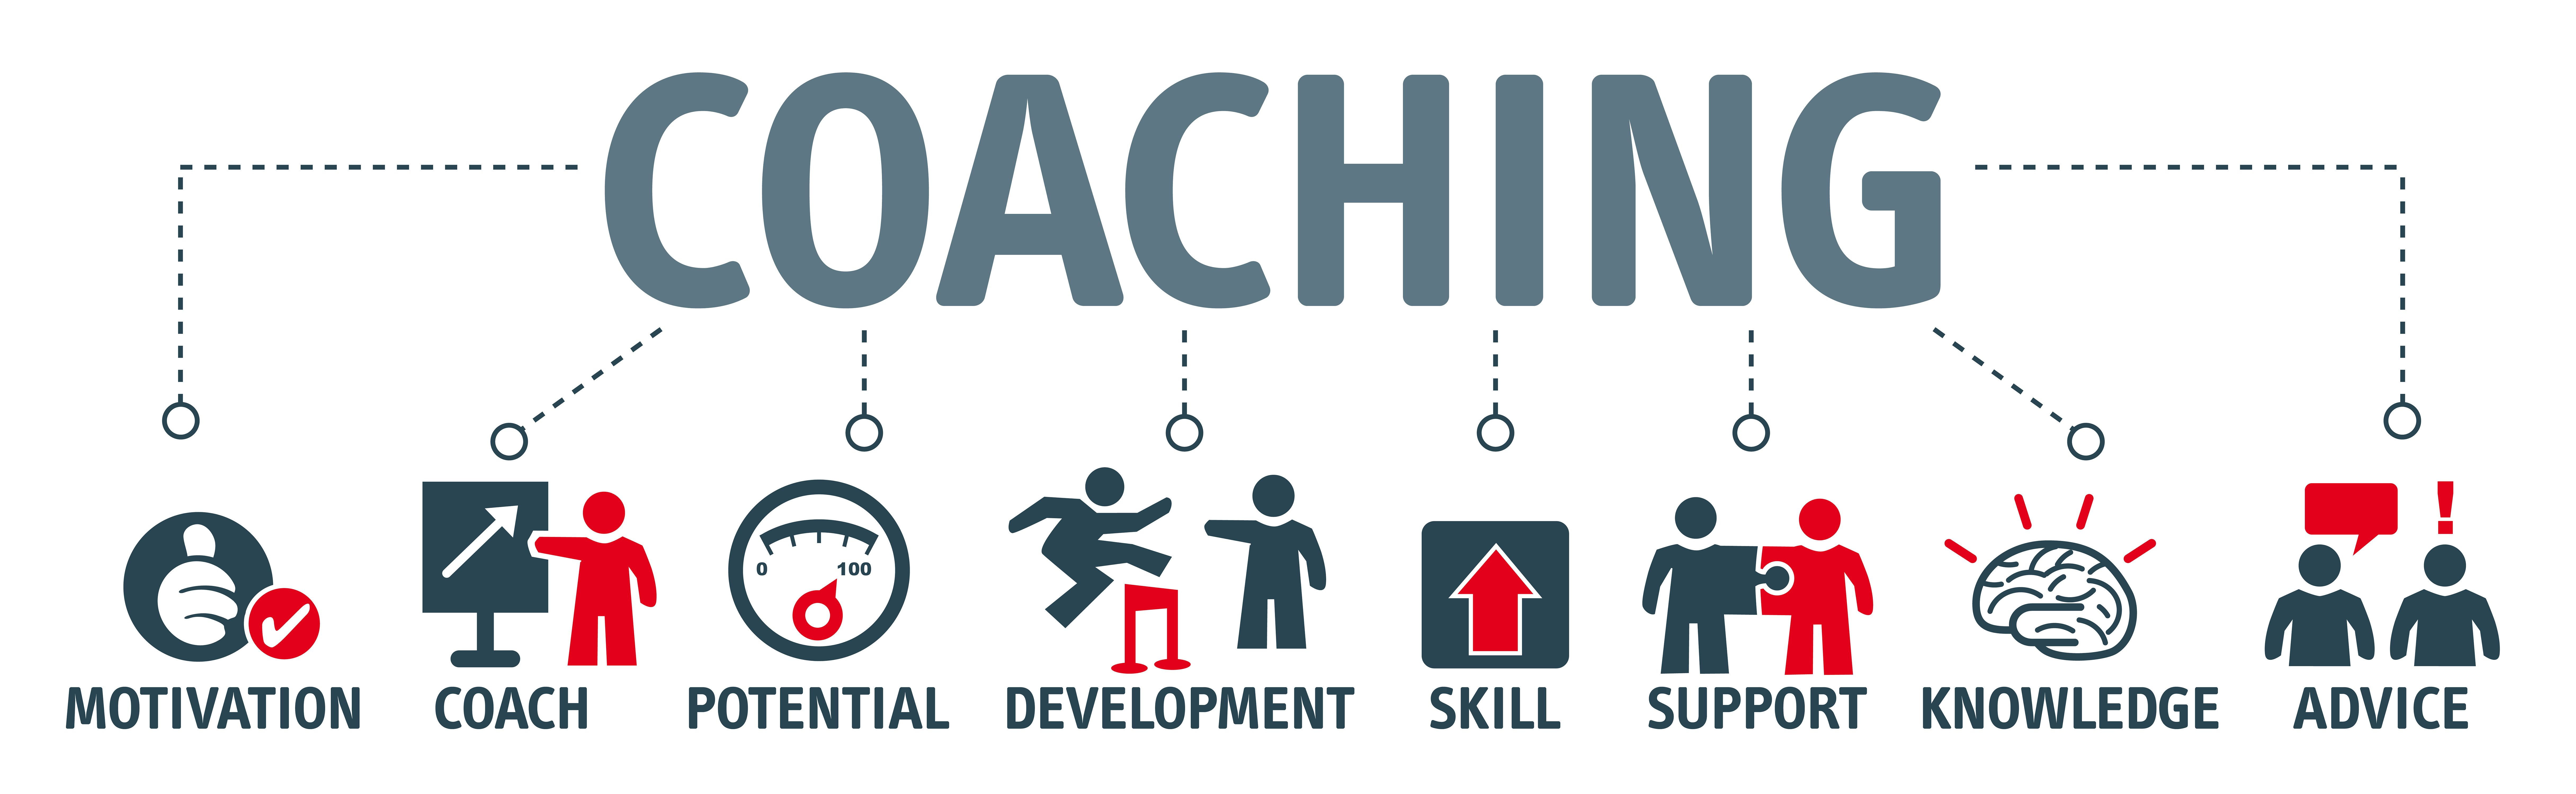 Coaching Diagram